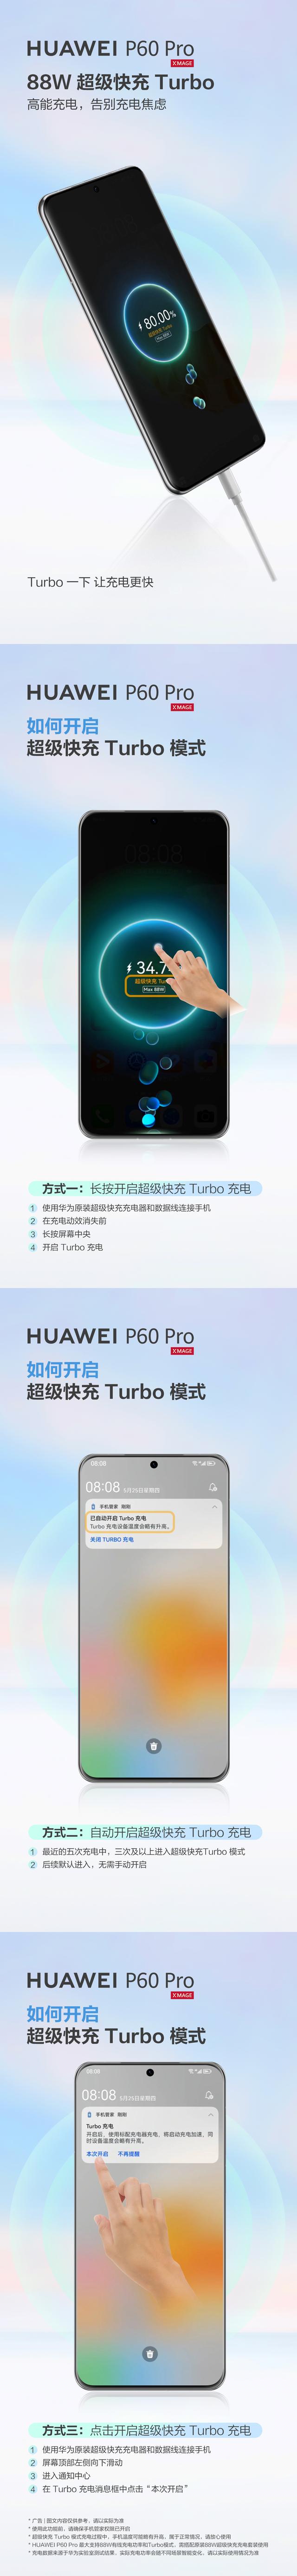 华为 P60 Pro 开启超级快充Turbo模式，解锁更快的充电方式！